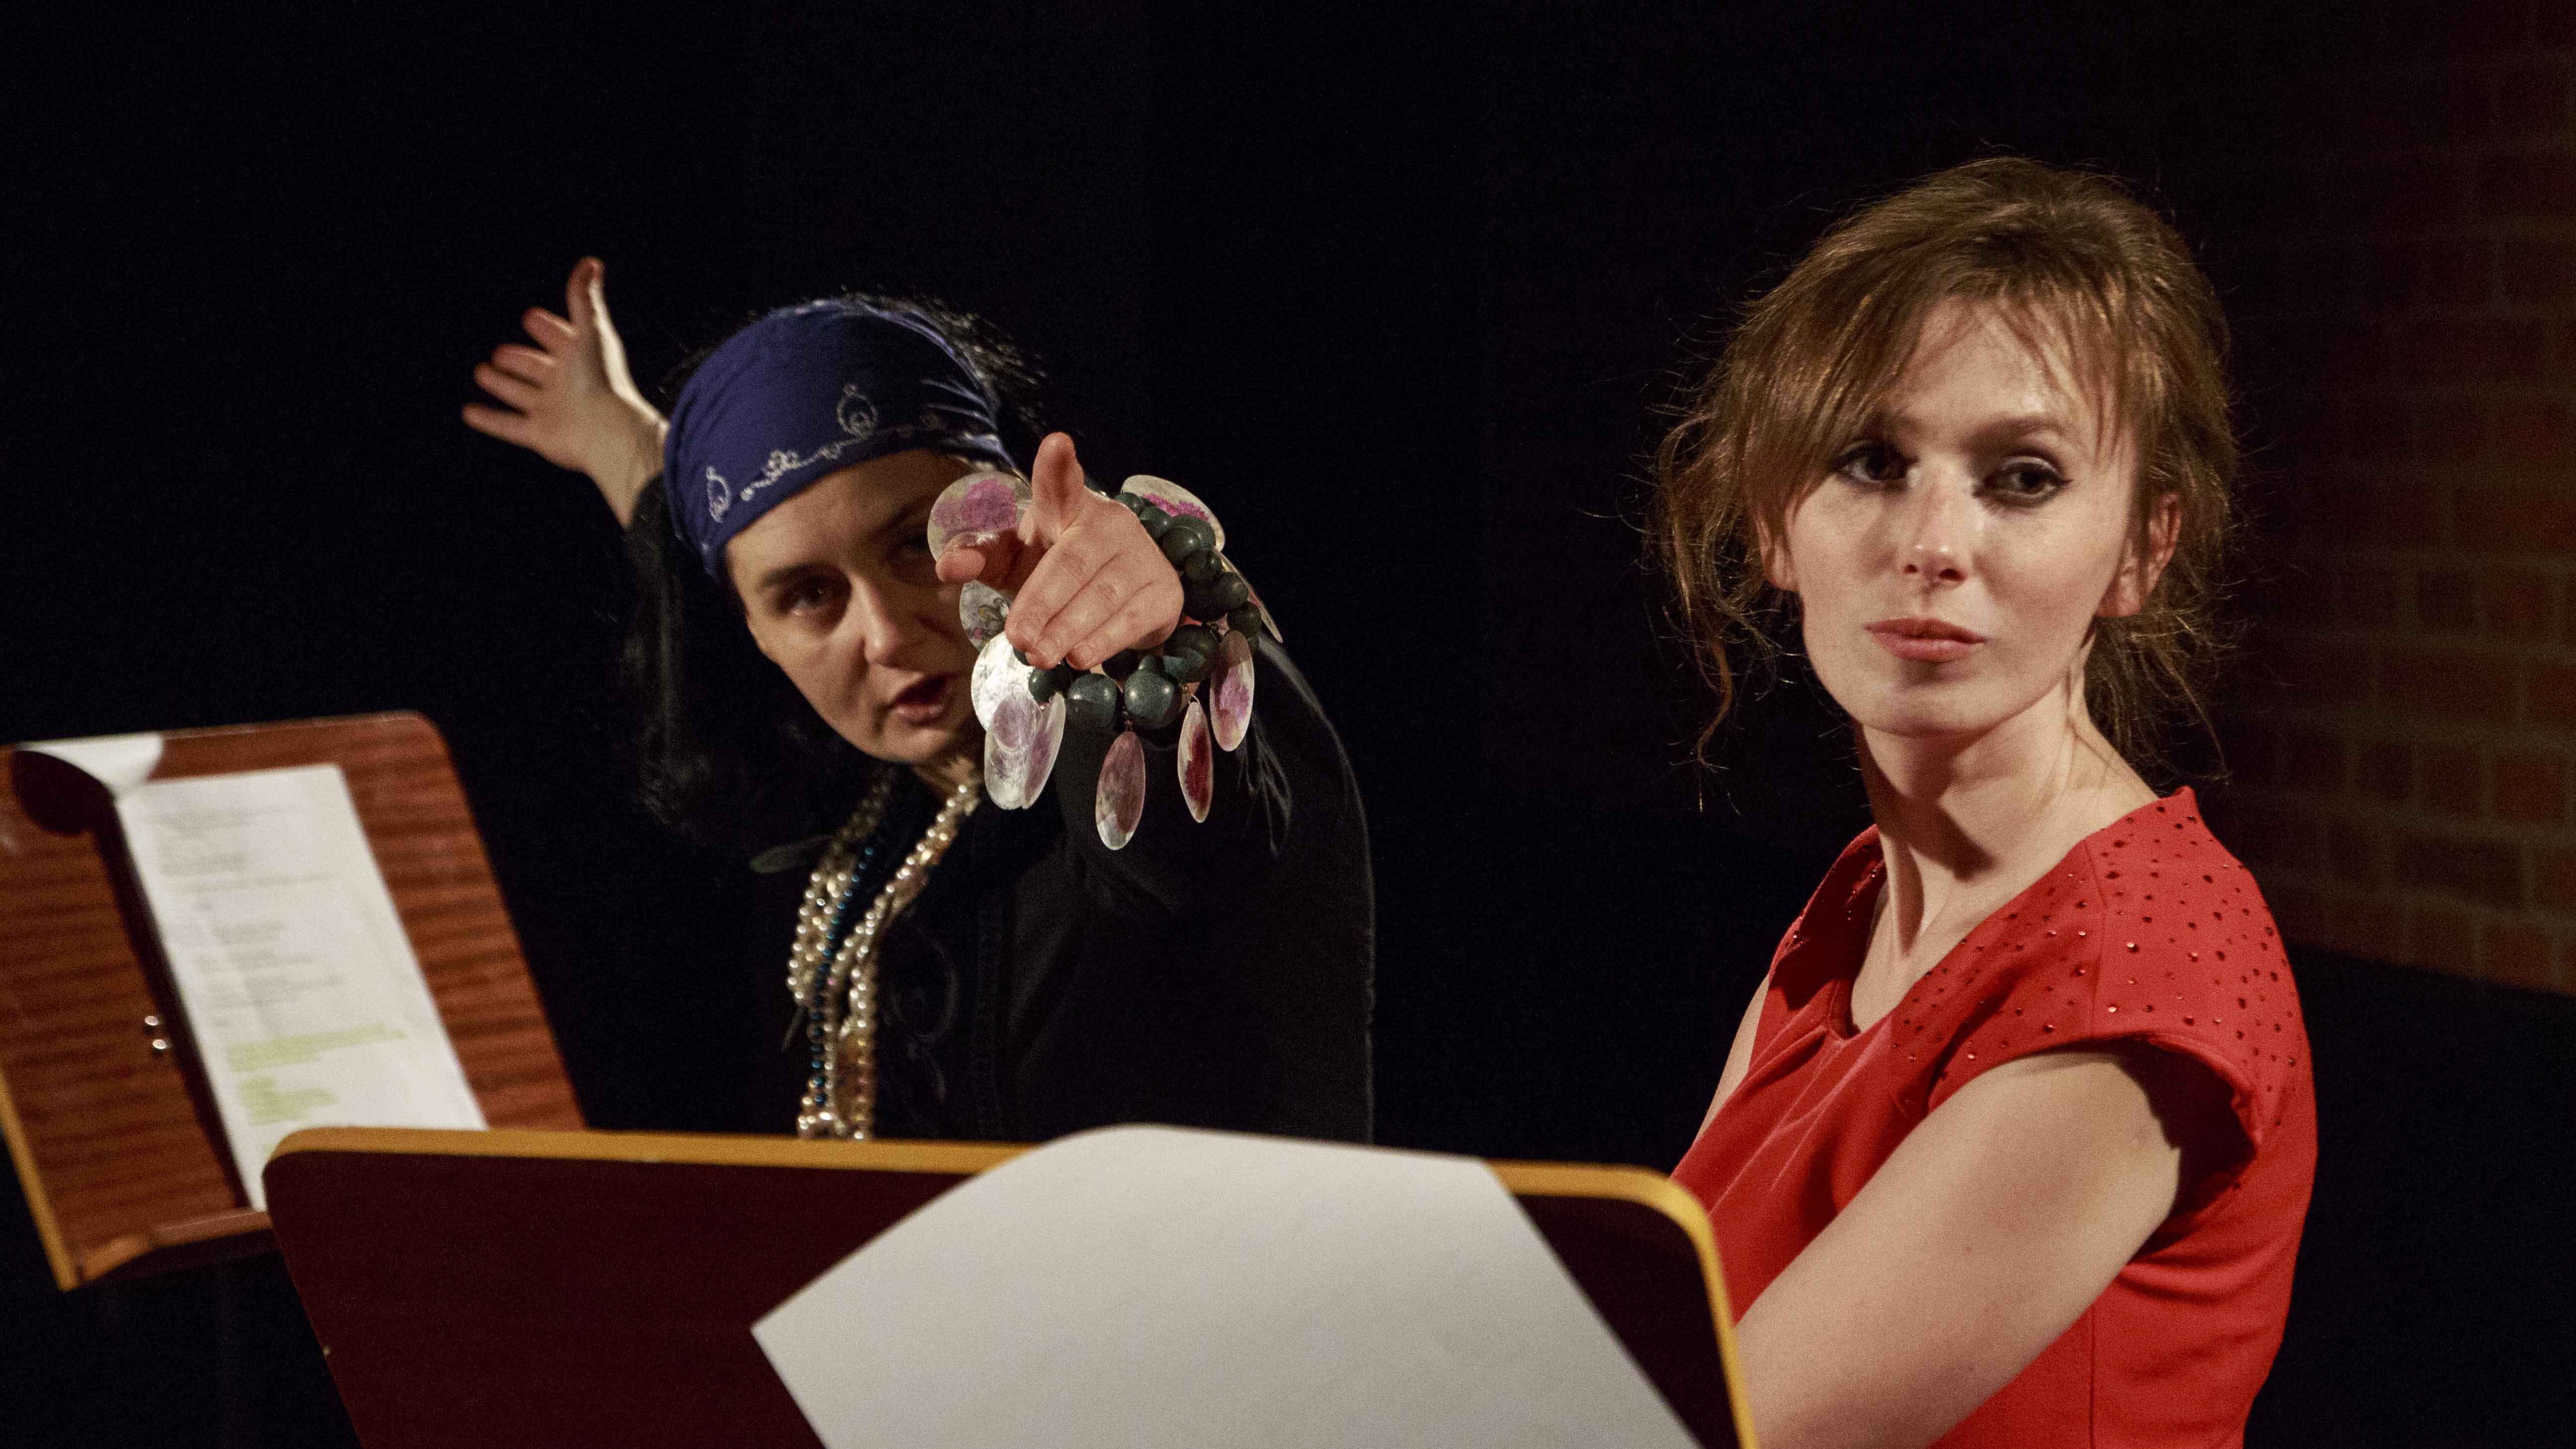 Zdjęcie ze spektaklu Dzielnice cudów. Dwie aktorki przy pulpitach z tekstem. Na pierwszym planie aktorka w czerwonej sukience, na drugim aktorka przebrana jak cyganka.